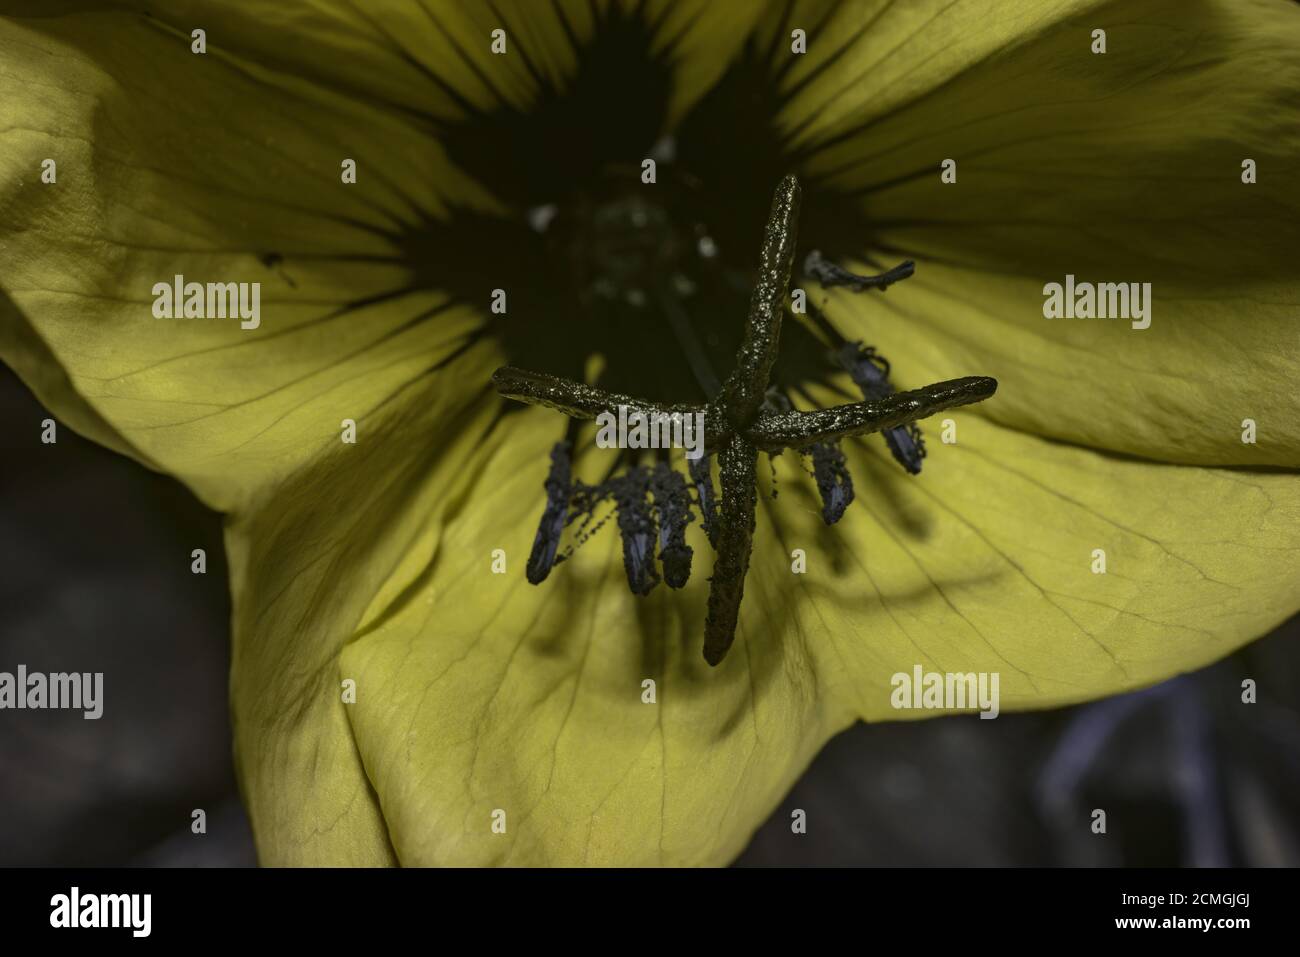 Les guides de nectar ou les marques de guide de miel dans les fleurs des espèces d'Oenothera biennis aident à guider les pollinisateurs vers les récompenses du nectar, pollen vu sous UV Banque D'Images